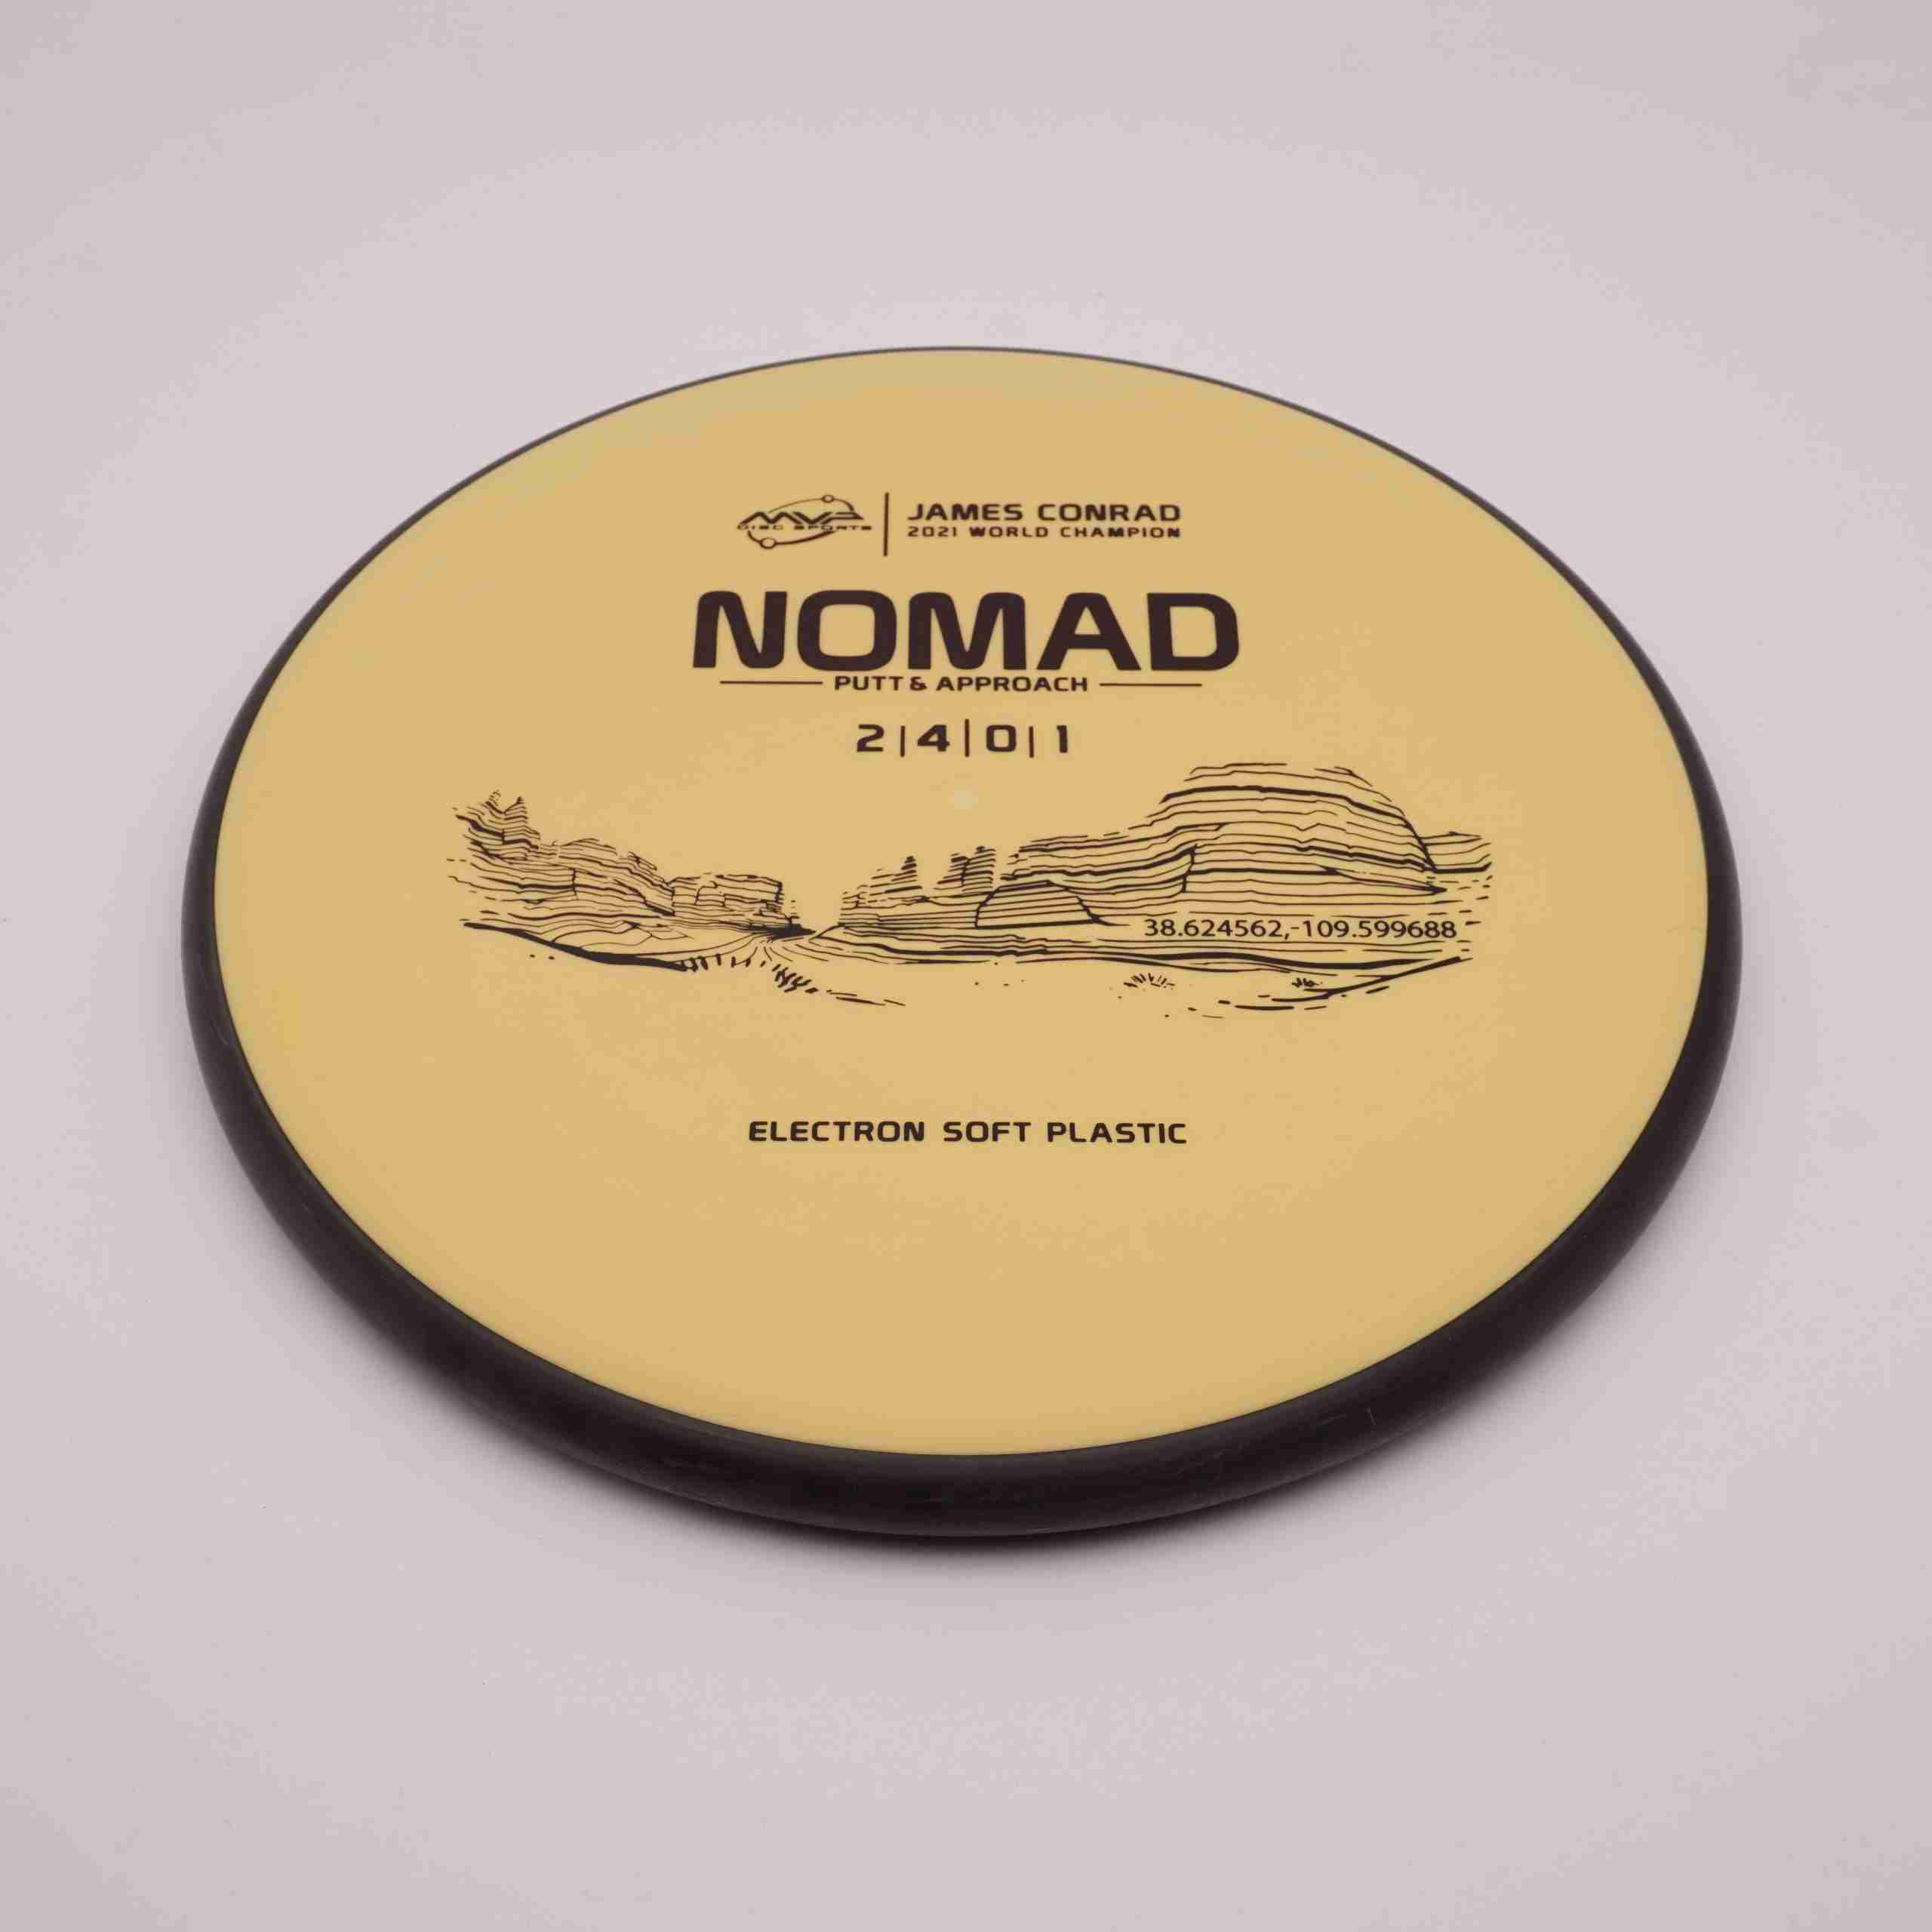 MVP | Electron Soft | Nomad